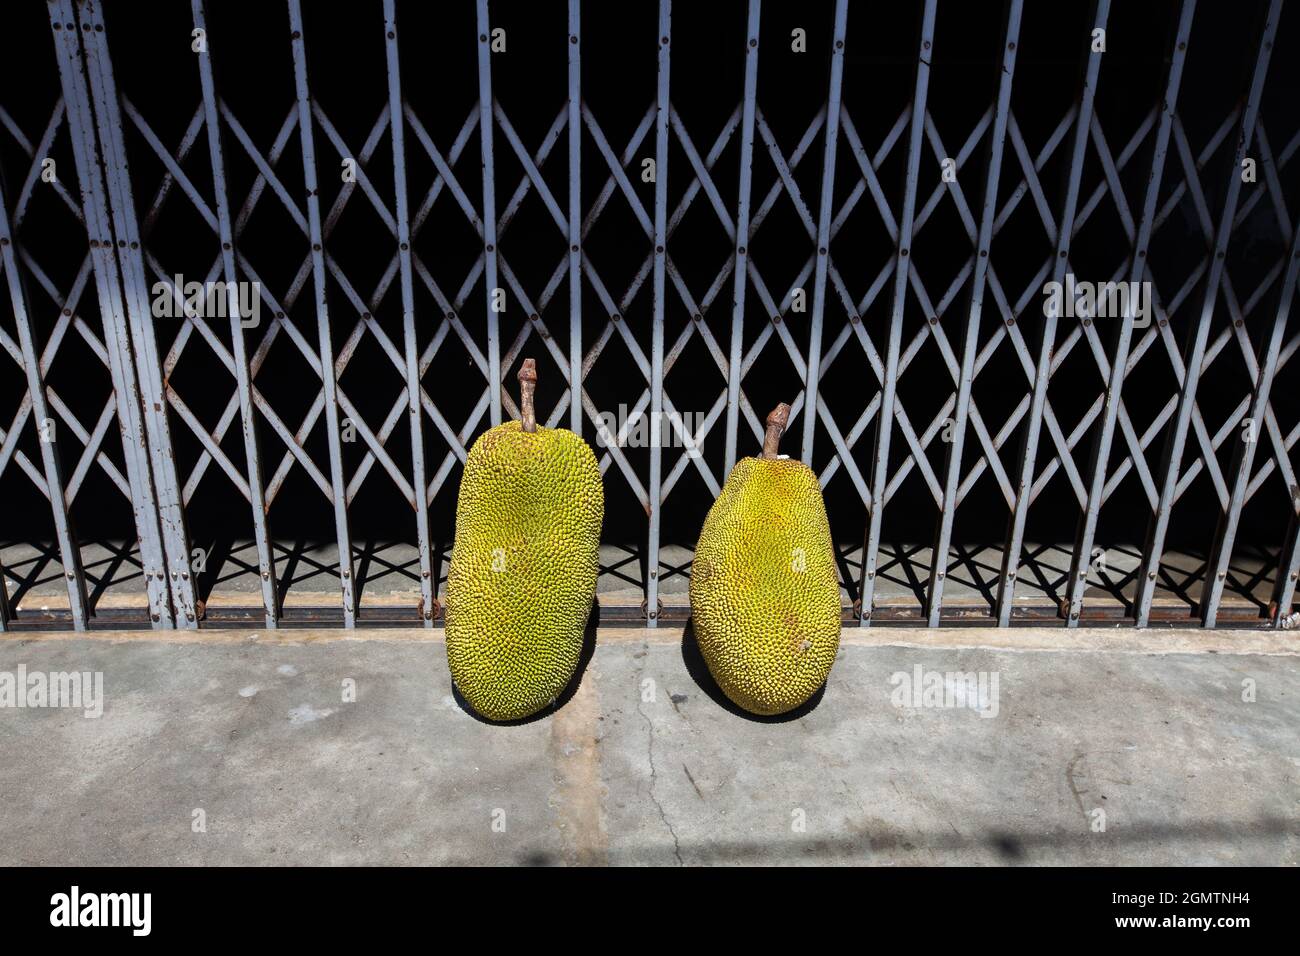 Deux jackfruits frais se trouvent devant la grille en acier du gril. Banque D'Images